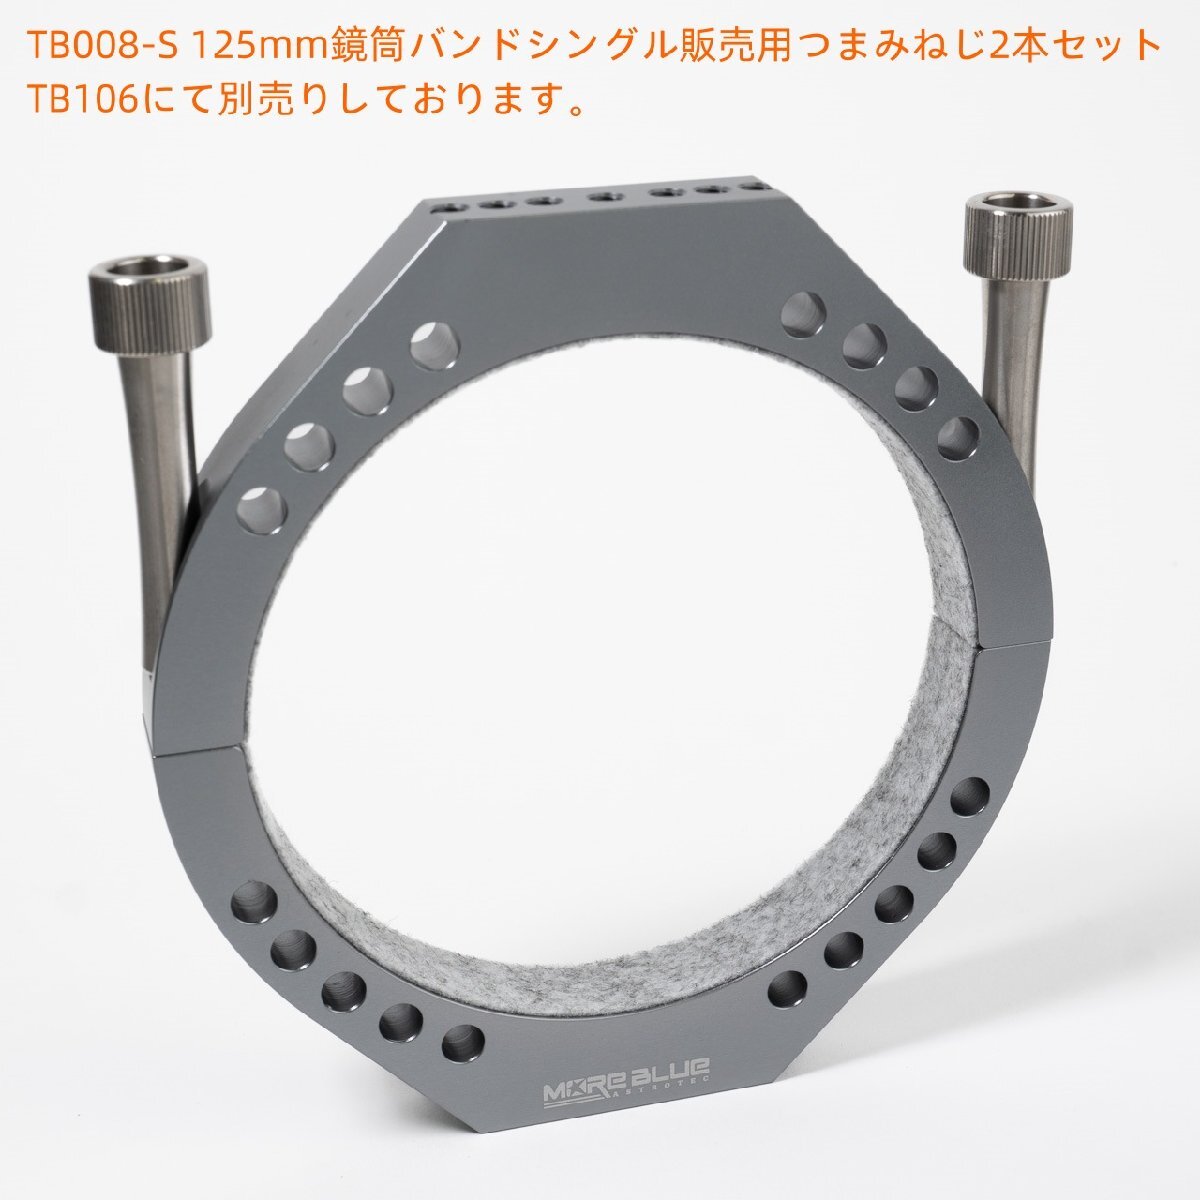 TB008-S 新型超軽量化設計 内径125mm鏡筒バンドシングル販売 ゆうパック全国送料700円_画像4